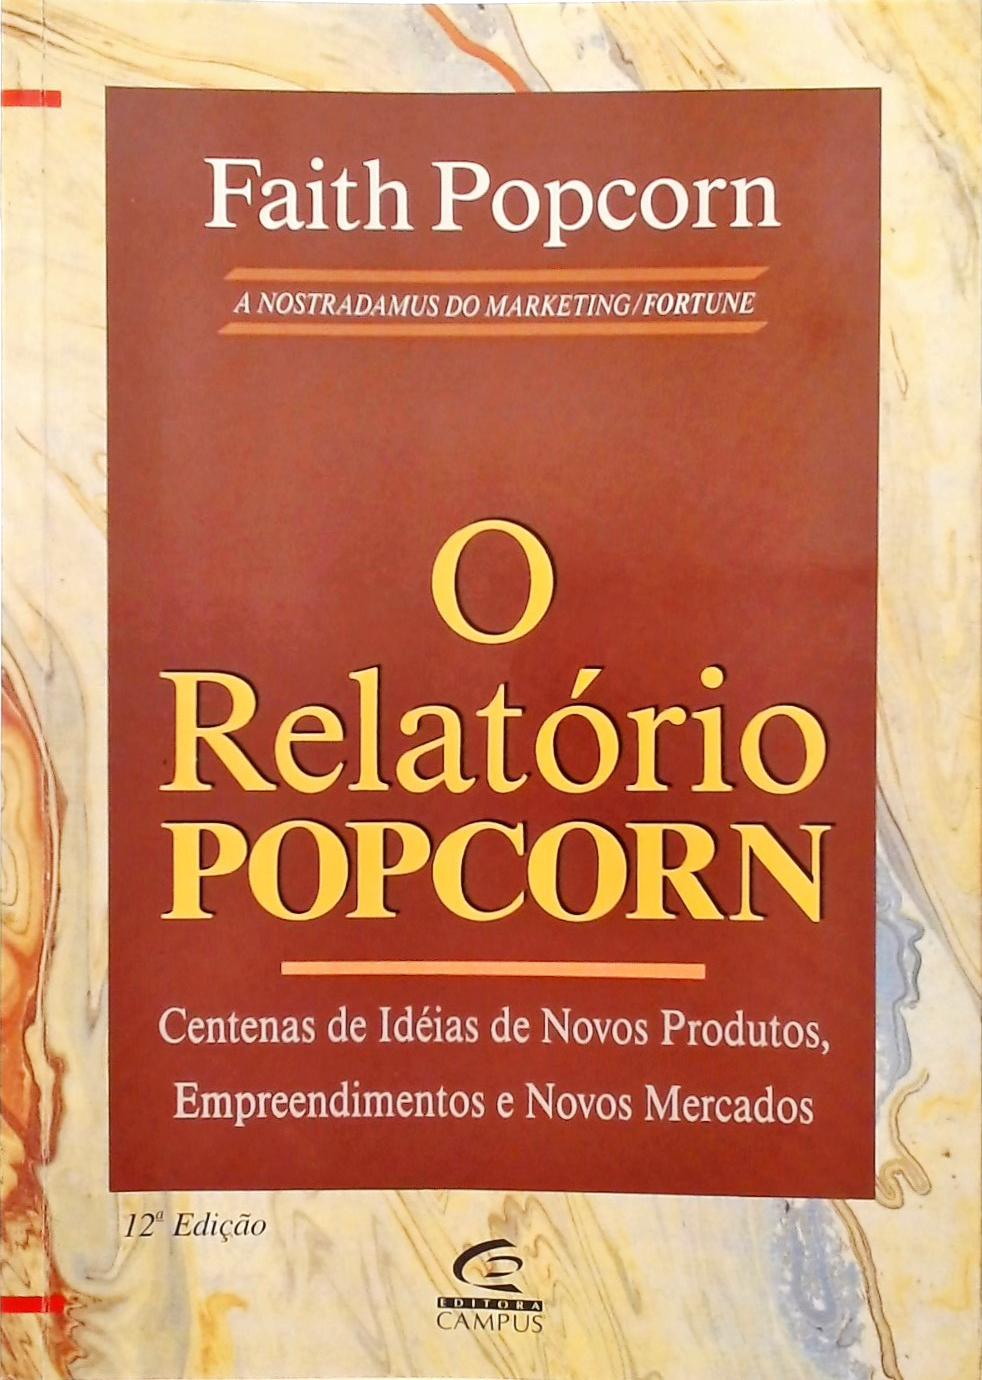 O Relatório Popcorn